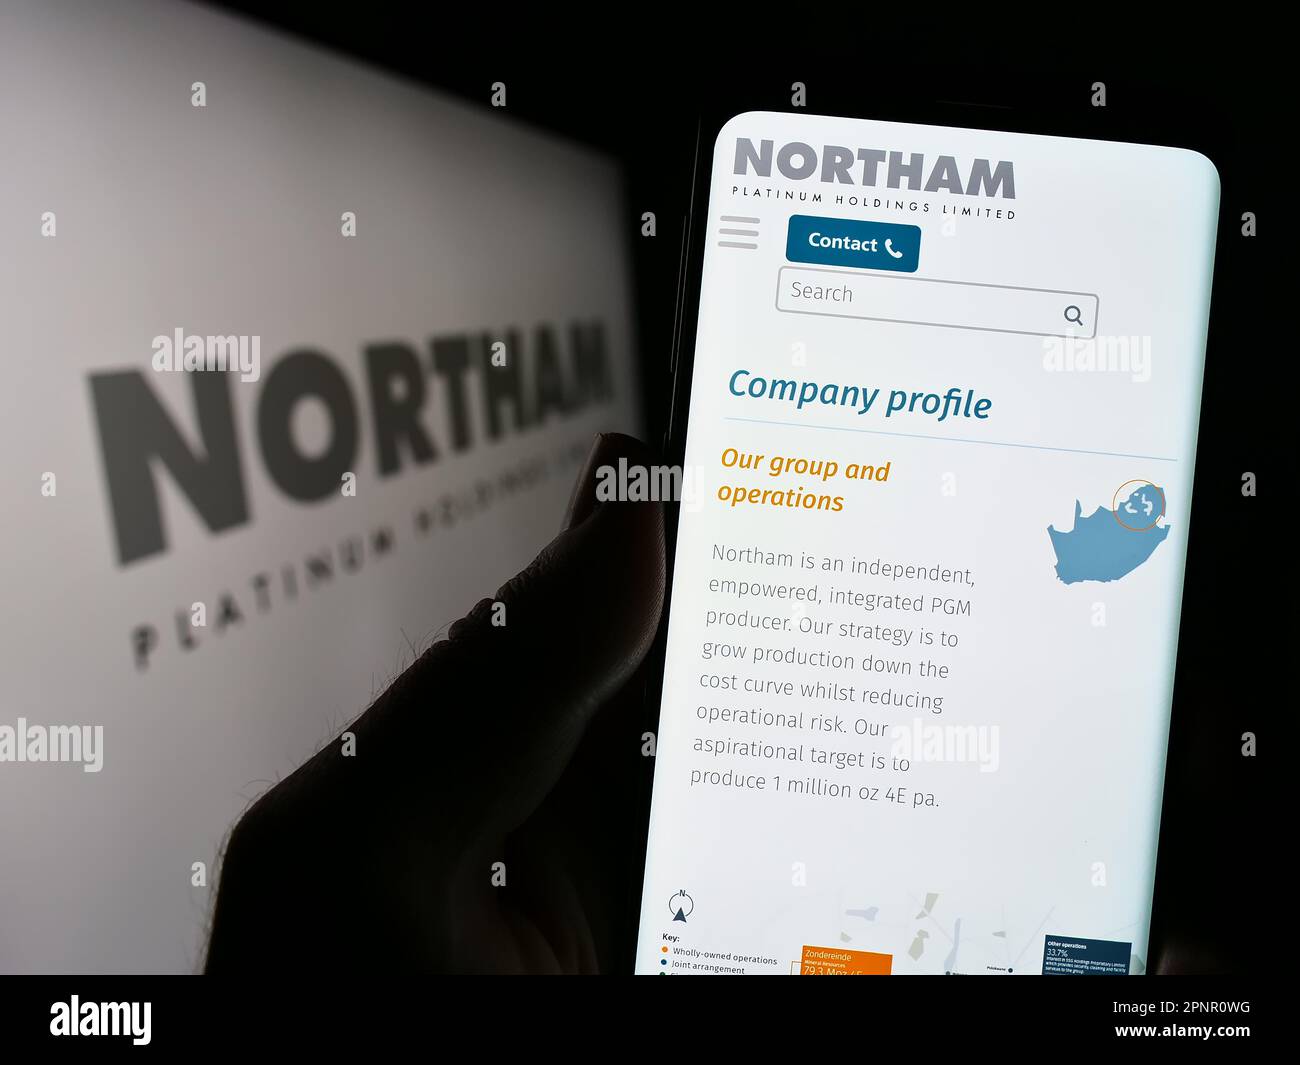 Persona che tiene il cellulare con il sito web della società Northam Platinum Holdings Limited sullo schermo di fronte al logo. Messa a fuoco al centro del display del telefono. Foto Stock